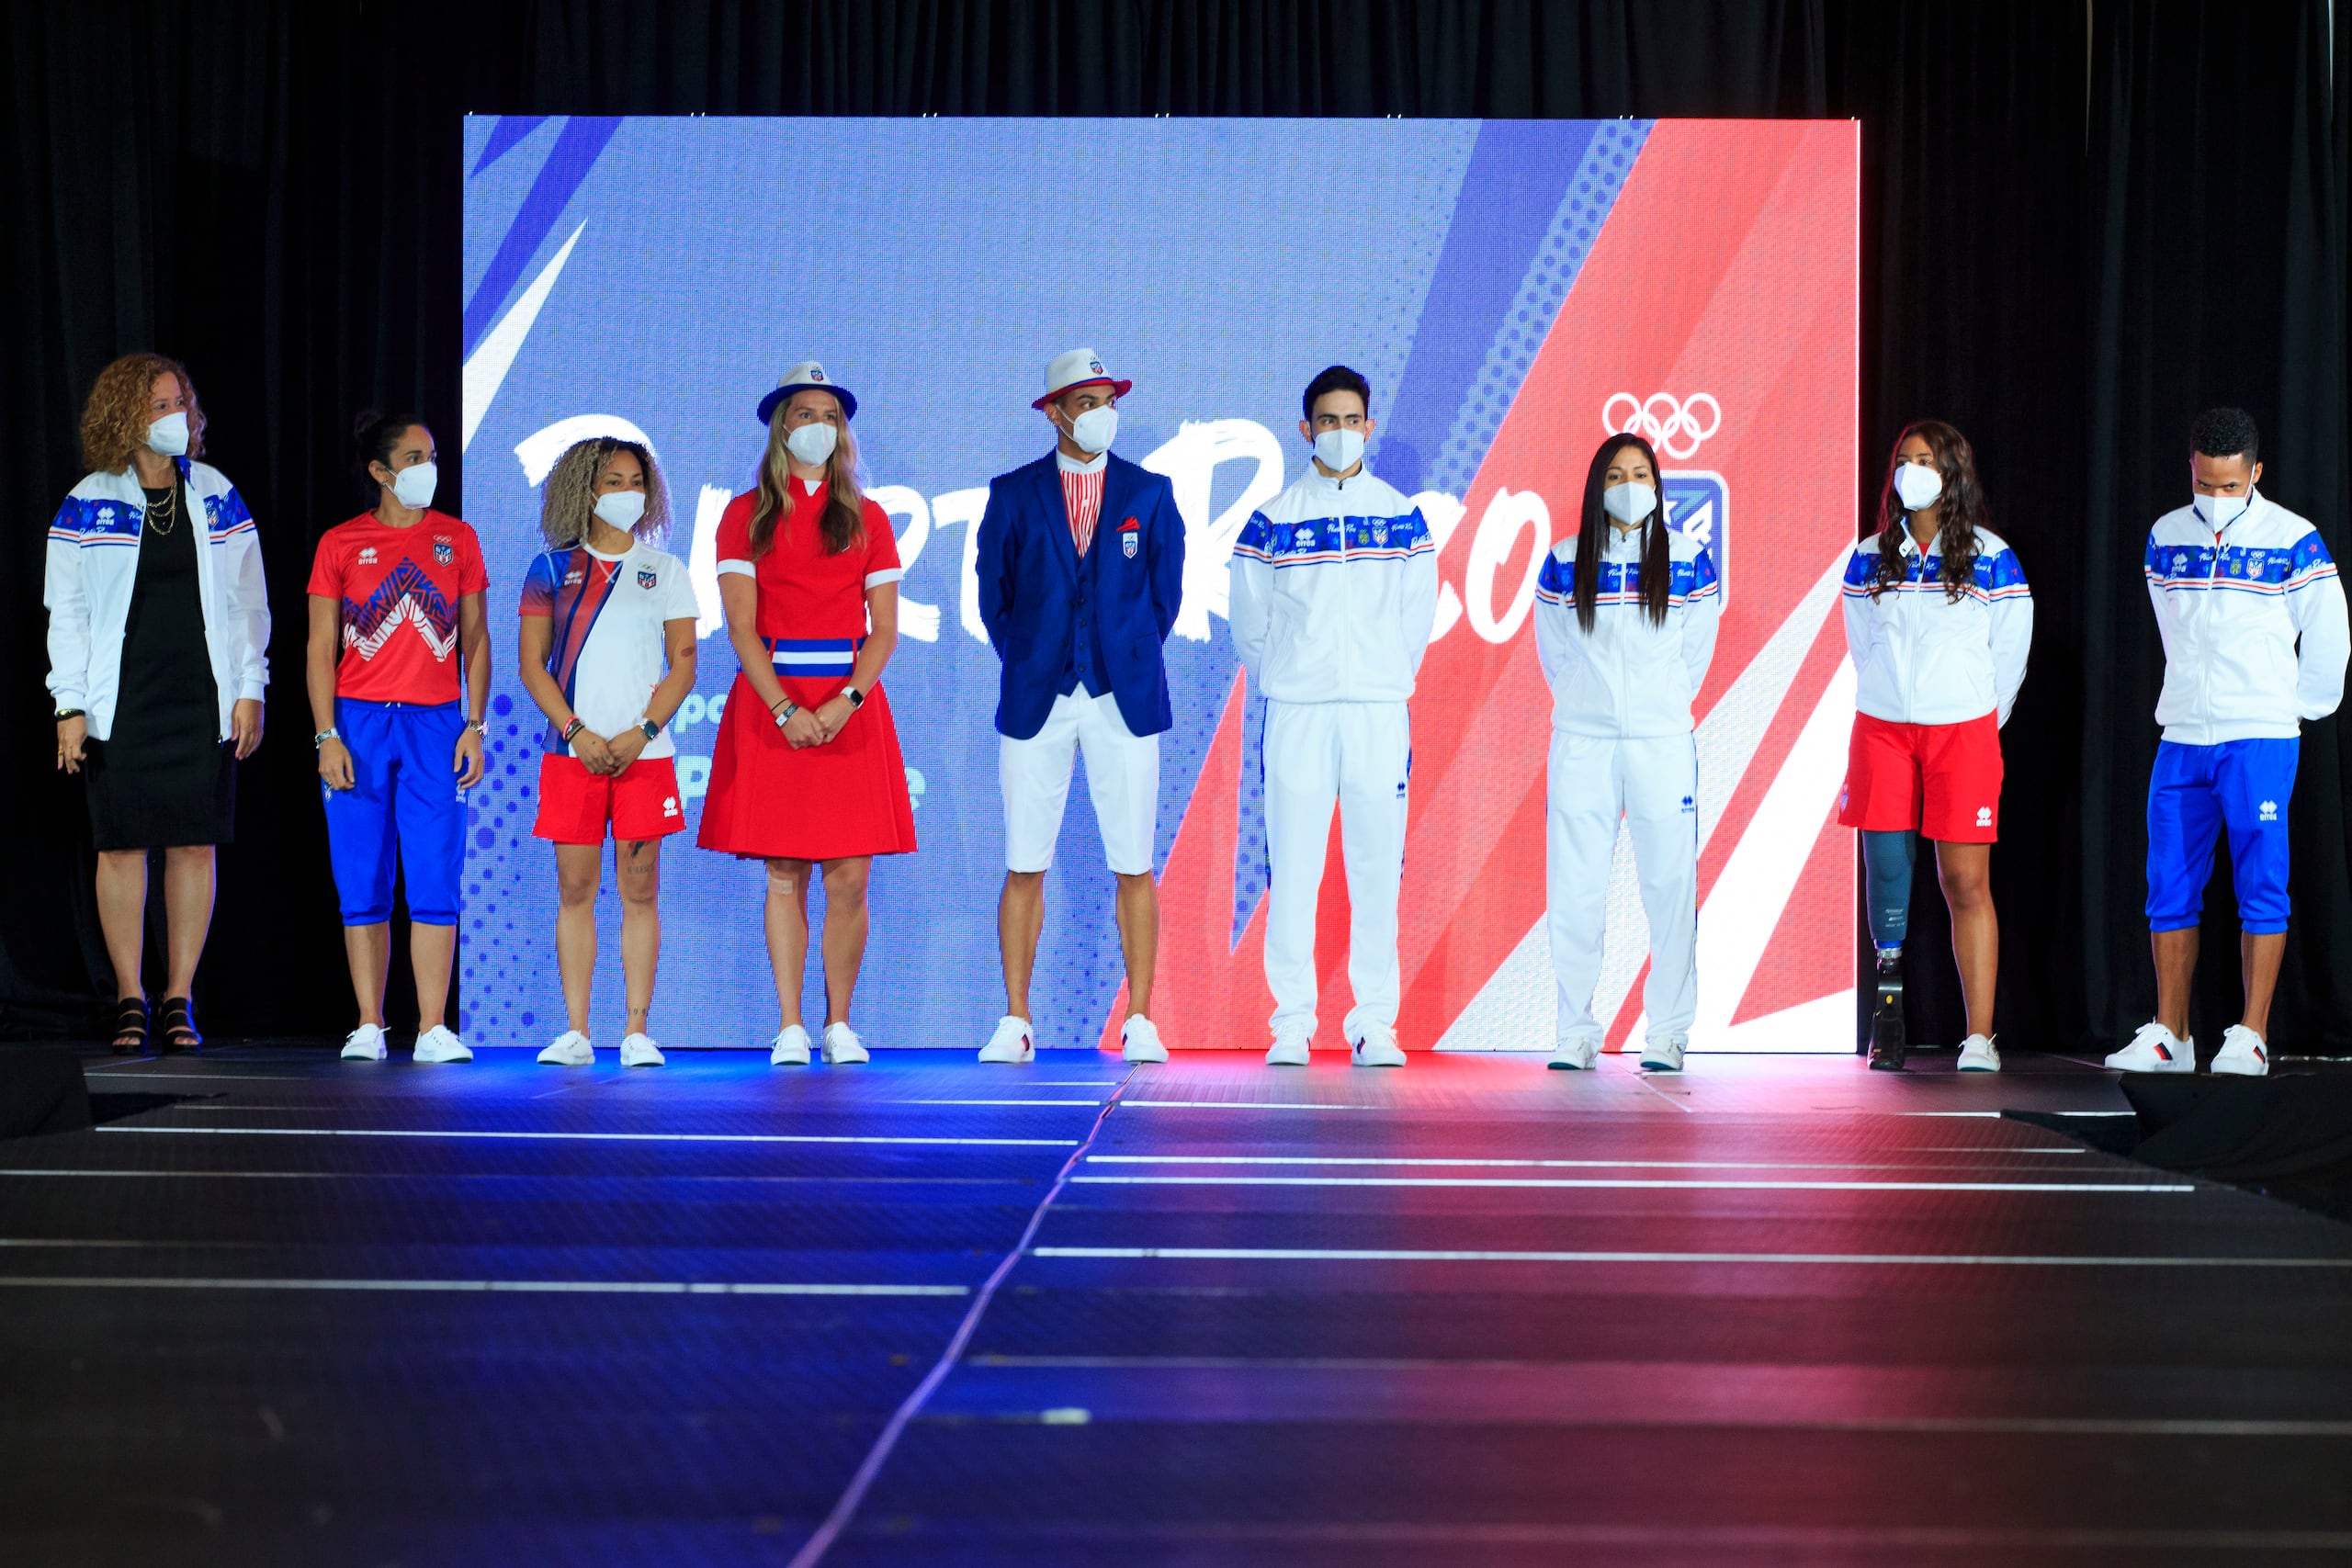 Sara Rosario (extrema izquierda), presidenta del Copur, hizo la presentación de las combinaciones del uniforme olímpico que llevará la delegación puertorriqueña a los juegos olímpicos.